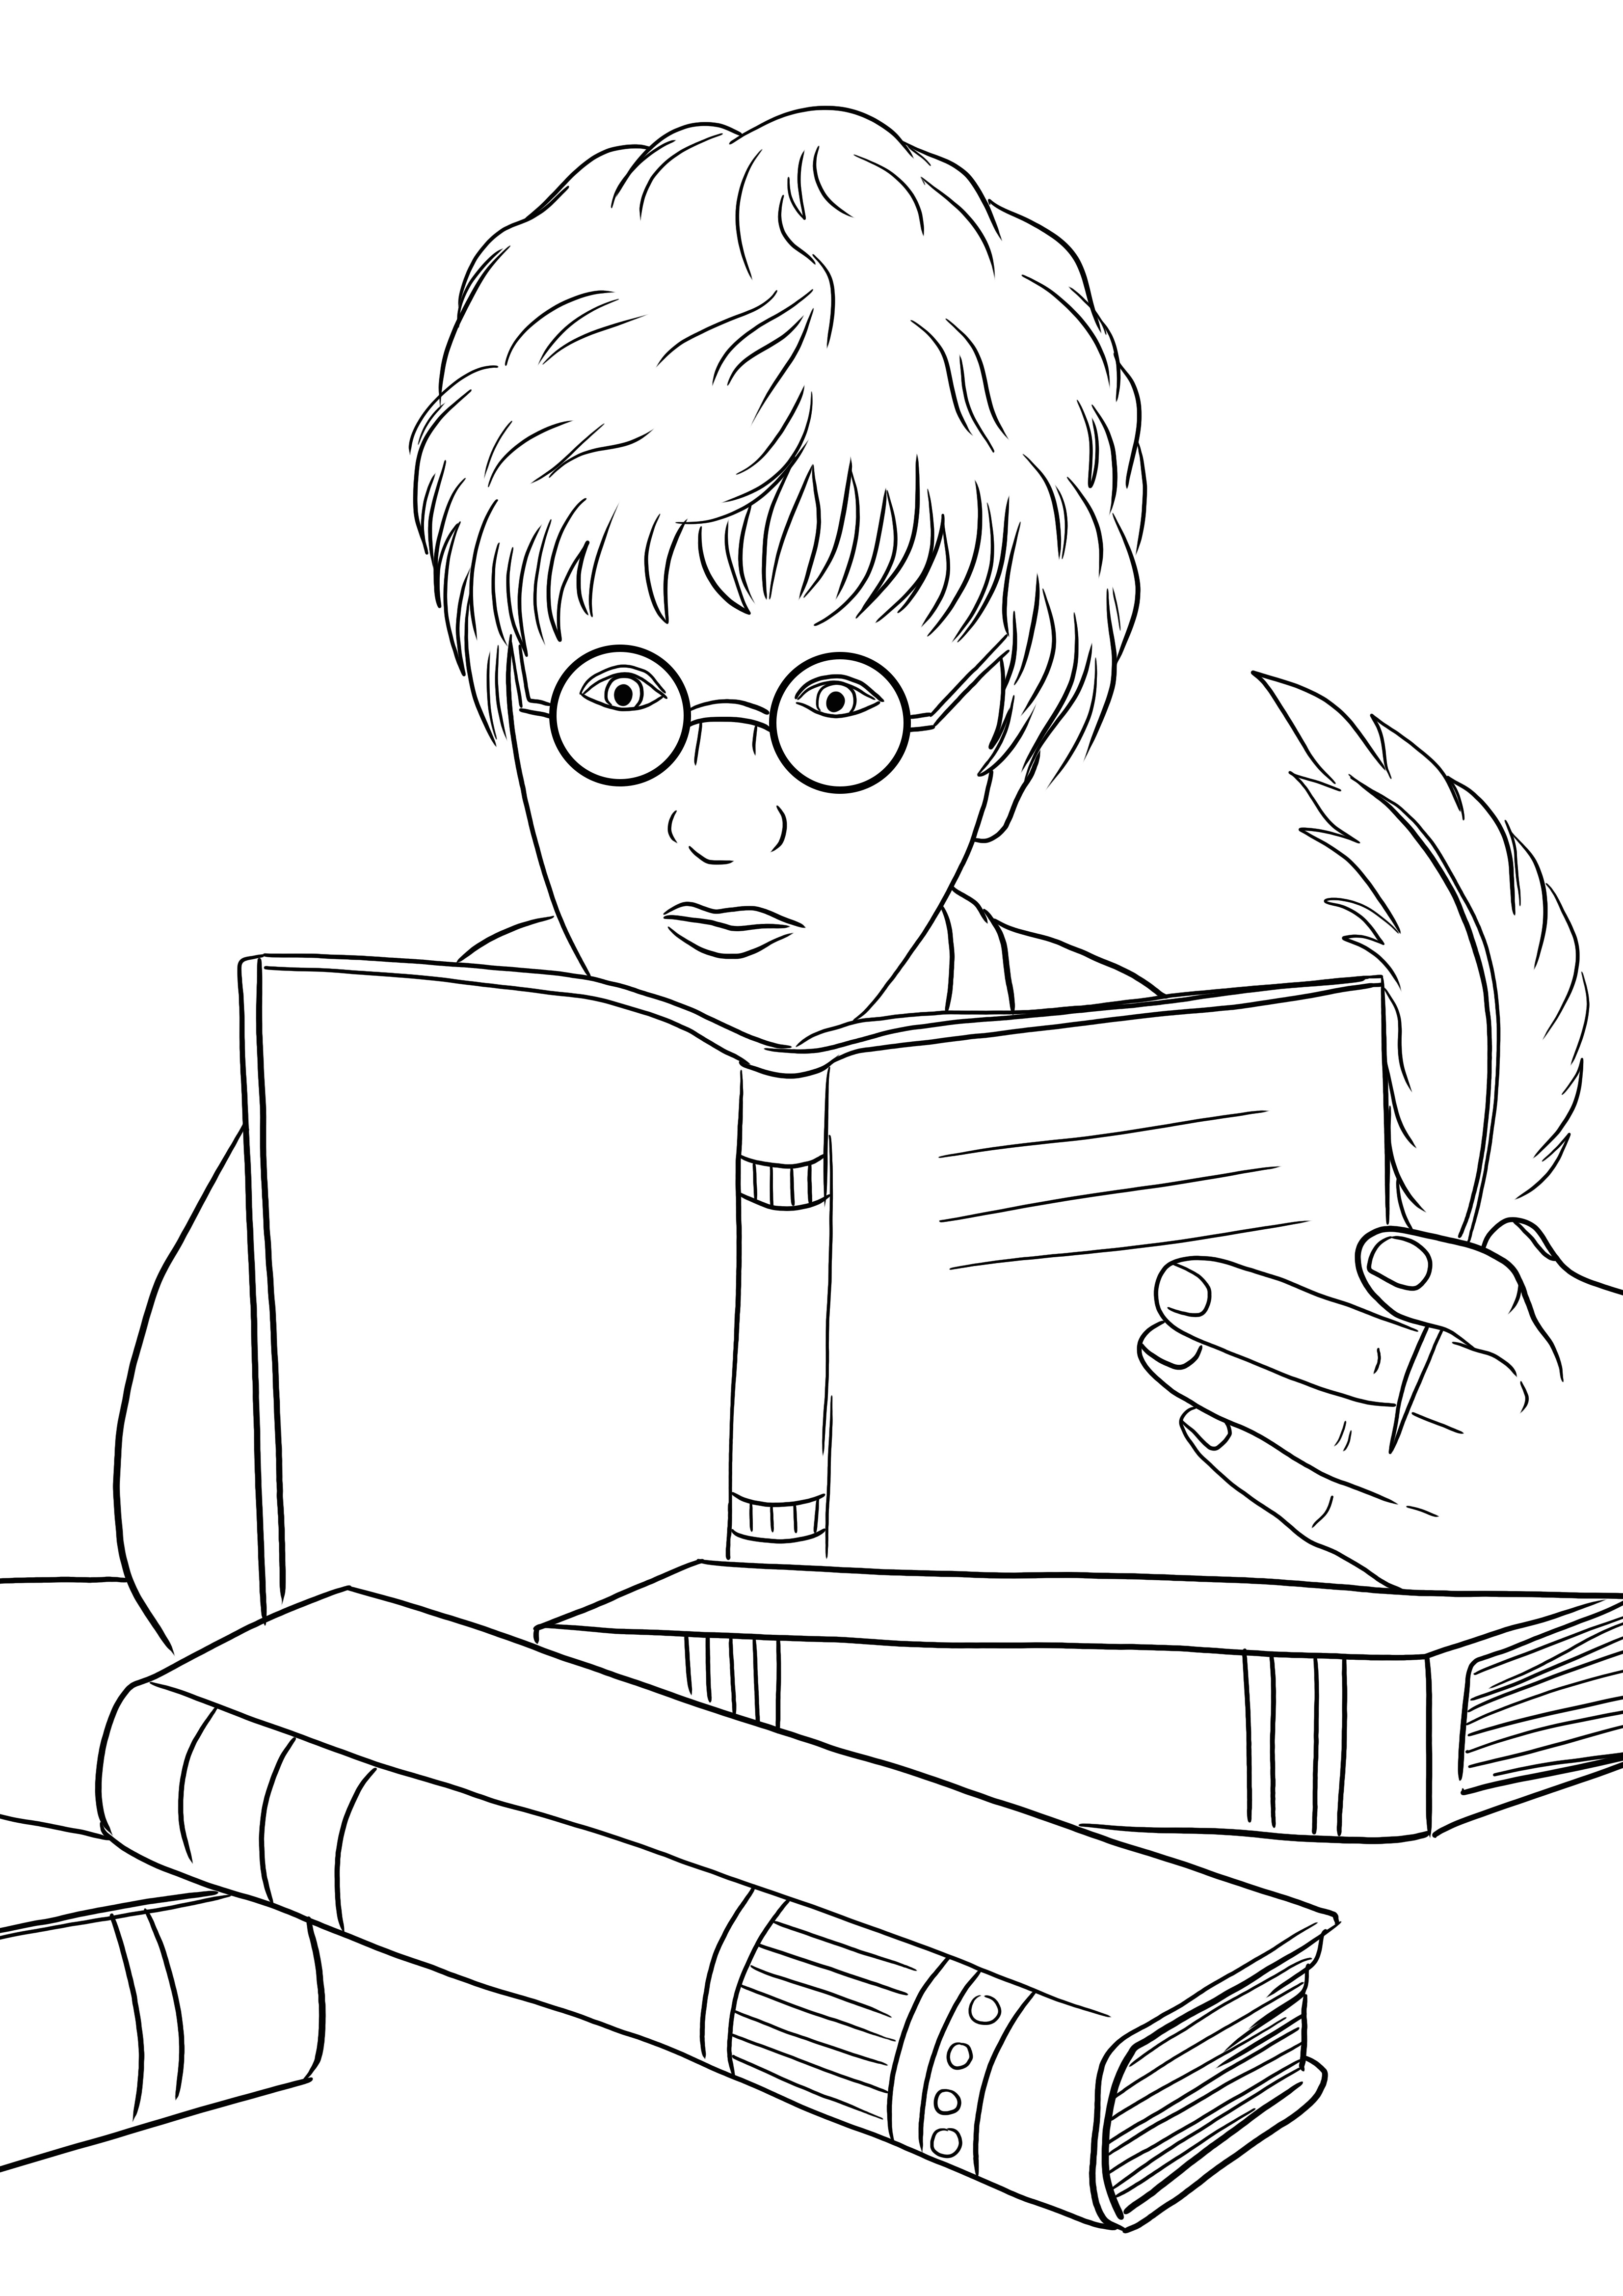 A Harry Potter és a varázslatok könyve ingyenesen letölthető vagy kinyomtatható, és könnyen kiszínezhető